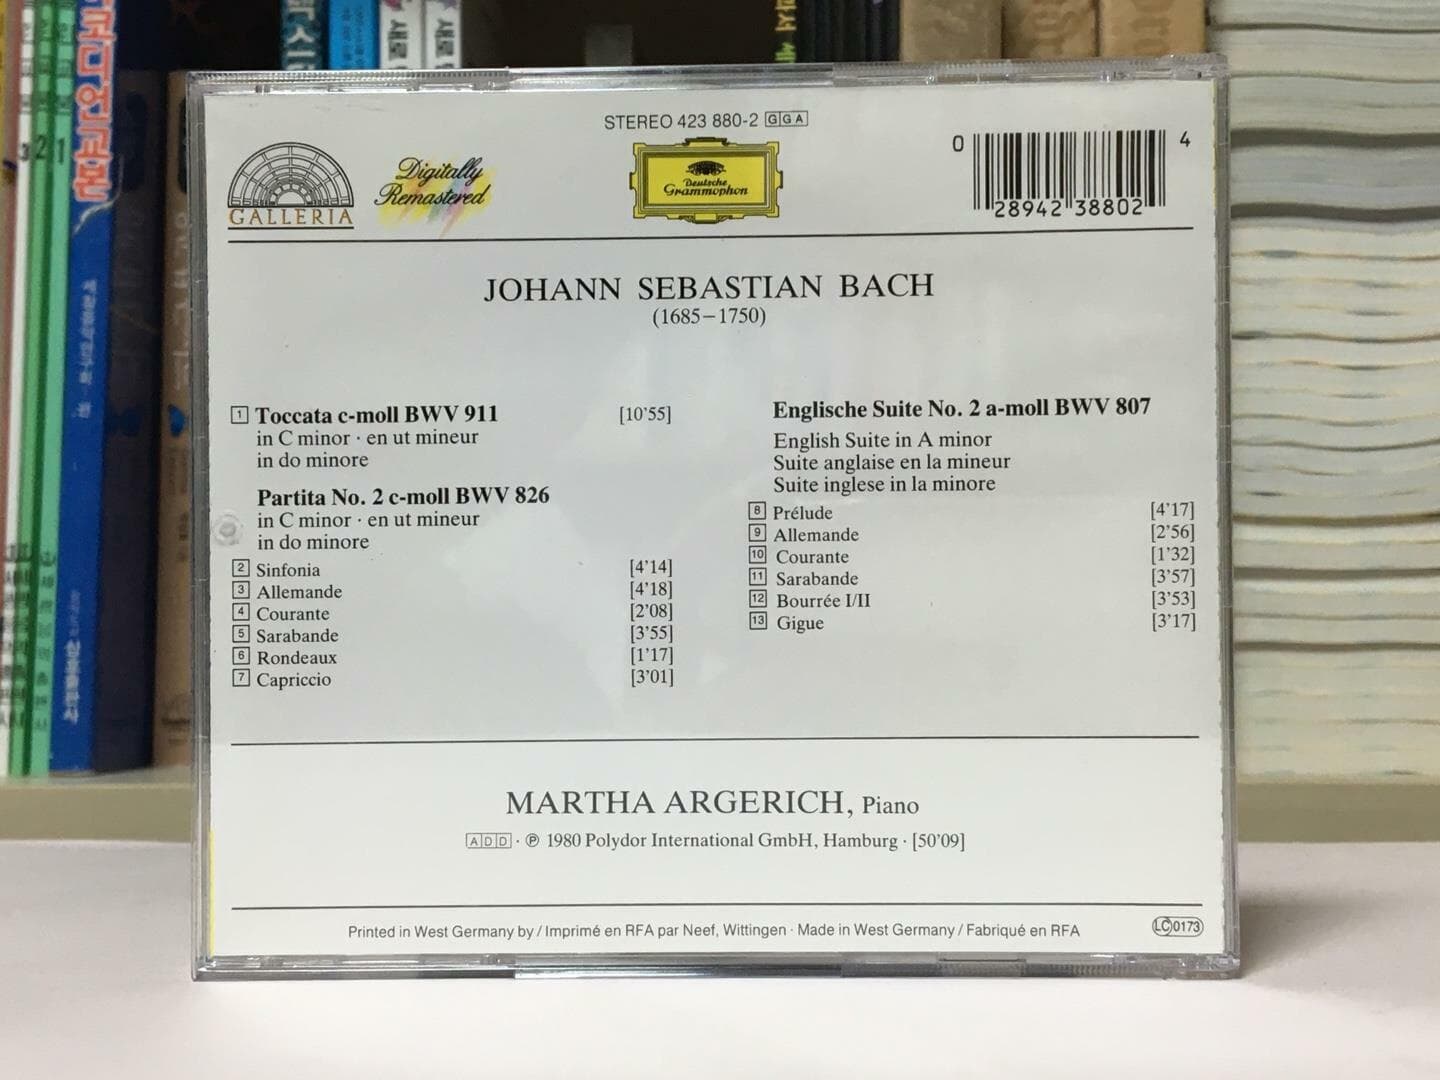 (수입)Martha Argerich: Bach - Toccata / Partita 2 / English Suite 2 / 상태 : 최상 (설명과 사진 참고)